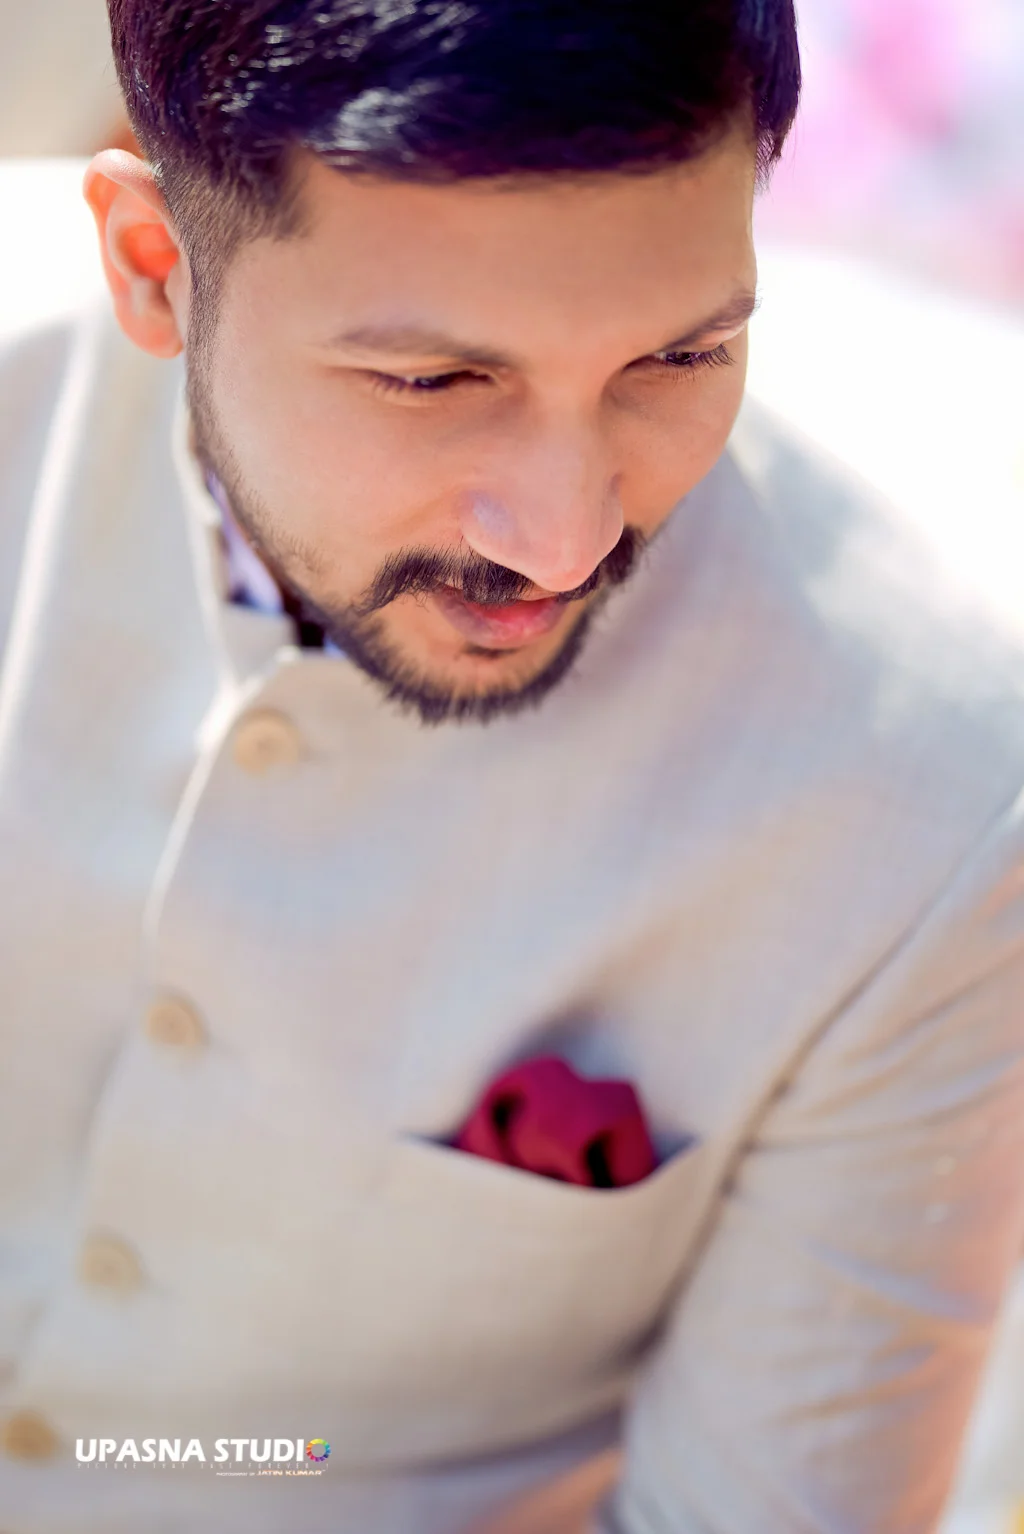 Best Candid Wedding Photographer in Delhi | Top Wedding Photographers in Delhi NCR